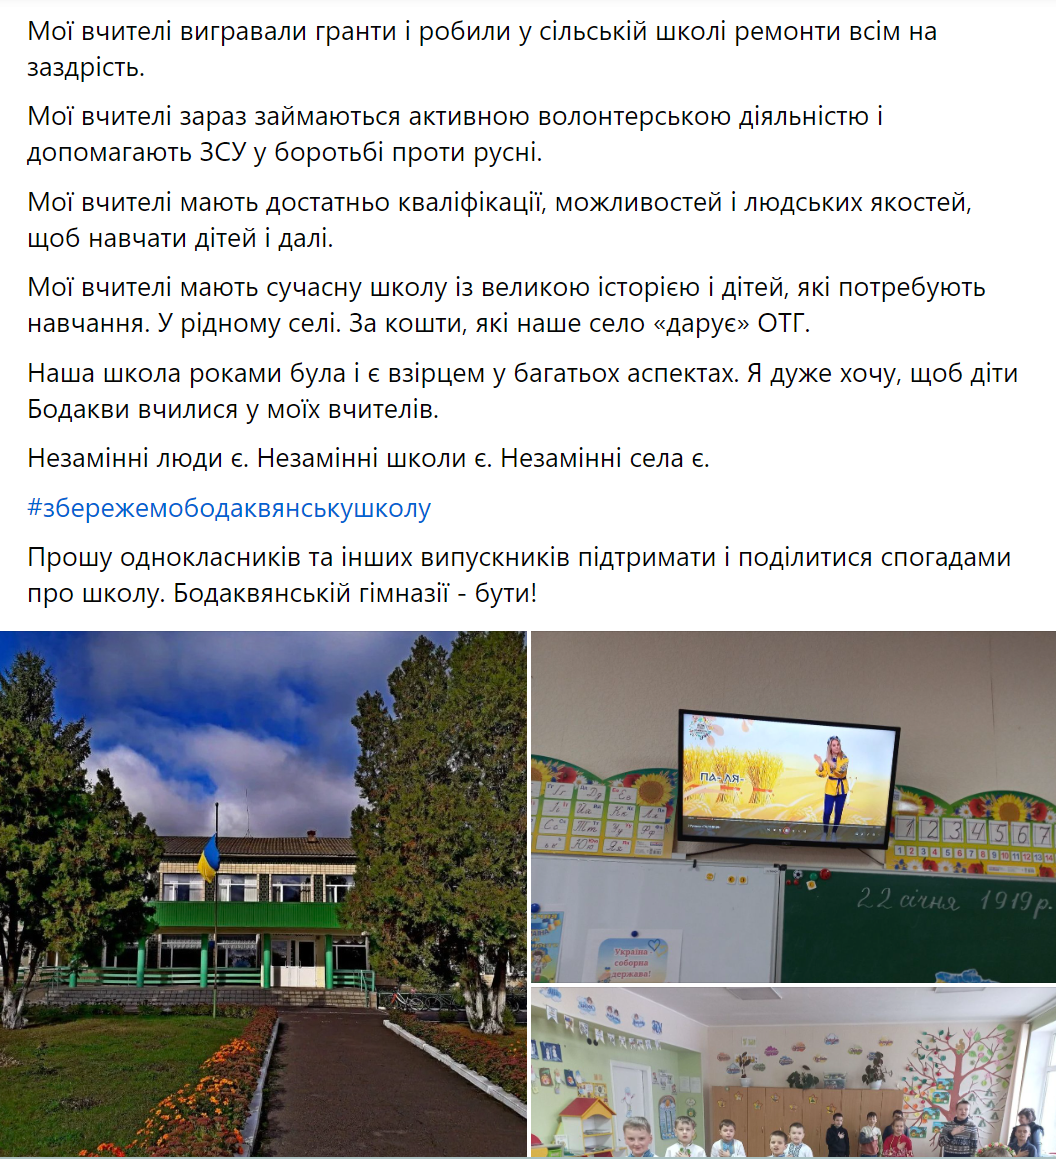 "Немає школи – нема села": на Полтавщині громада бореться за гімназію, яку хочуть закрити, не спитавши жителів